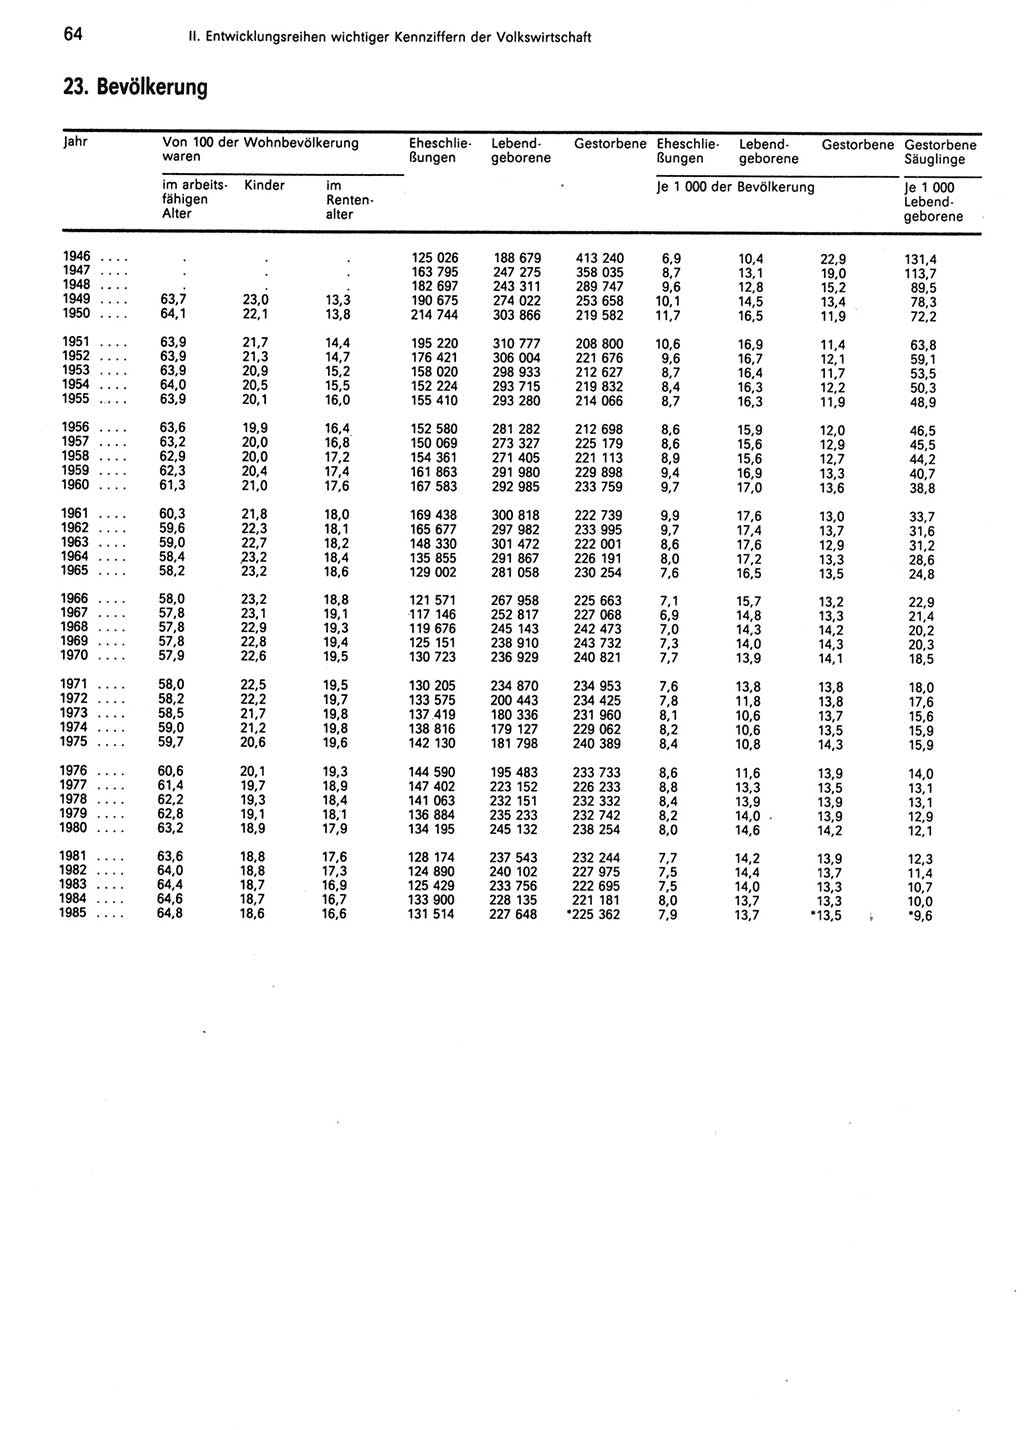 Statistisches Jahrbuch der Deutschen Demokratischen Republik (DDR) 1986, Seite 64 (Stat. Jb. DDR 1986, S. 64)